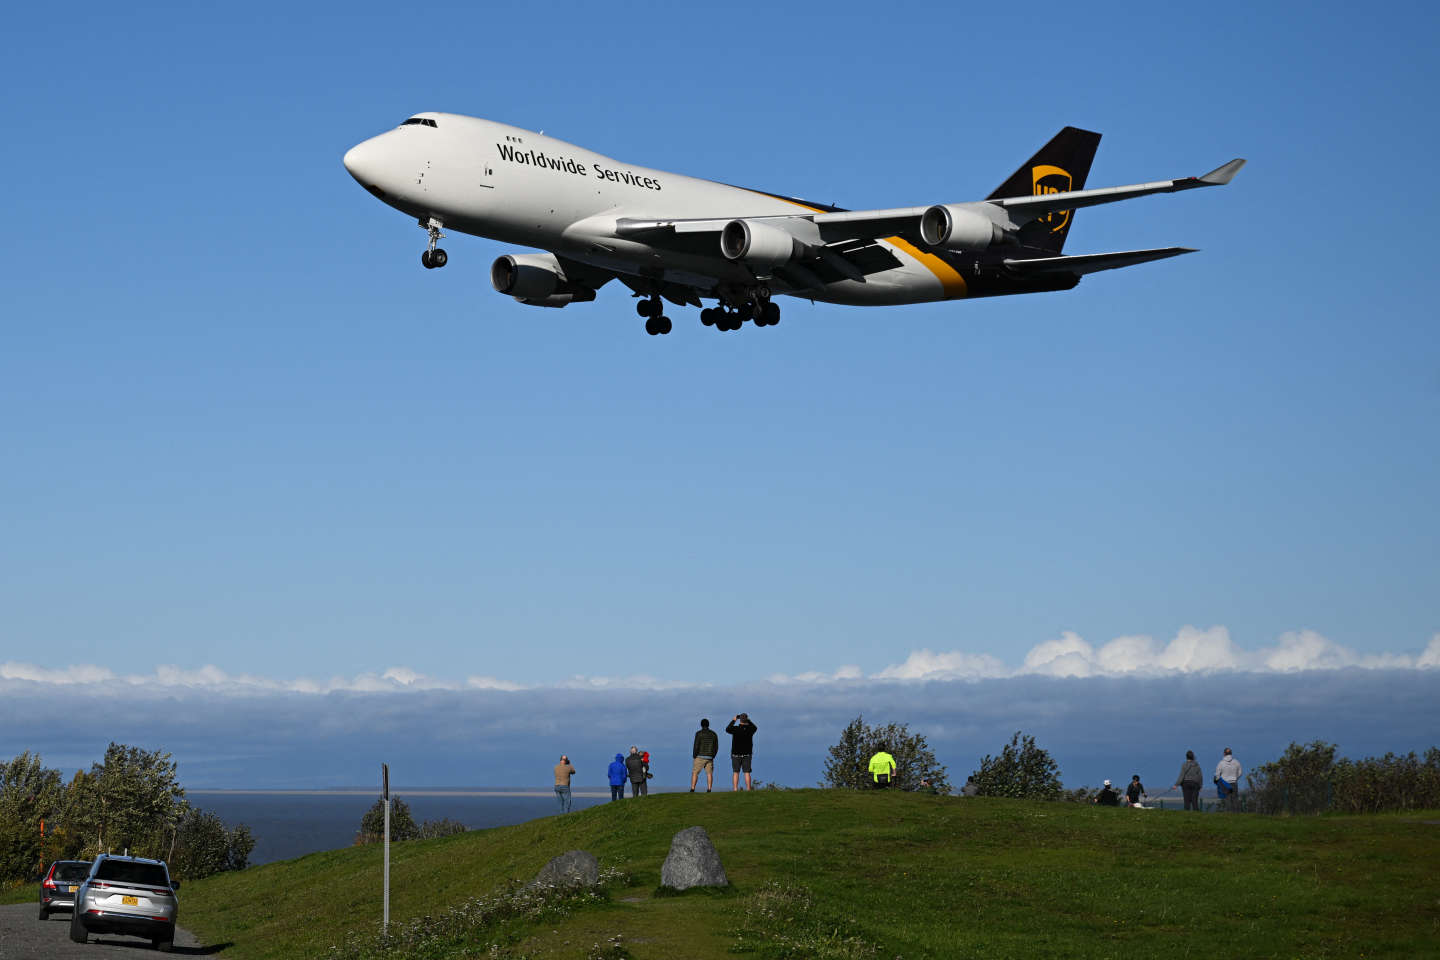 Après l’A380 d’Airbus, le Boeing 747 tire à son tour sa révérence